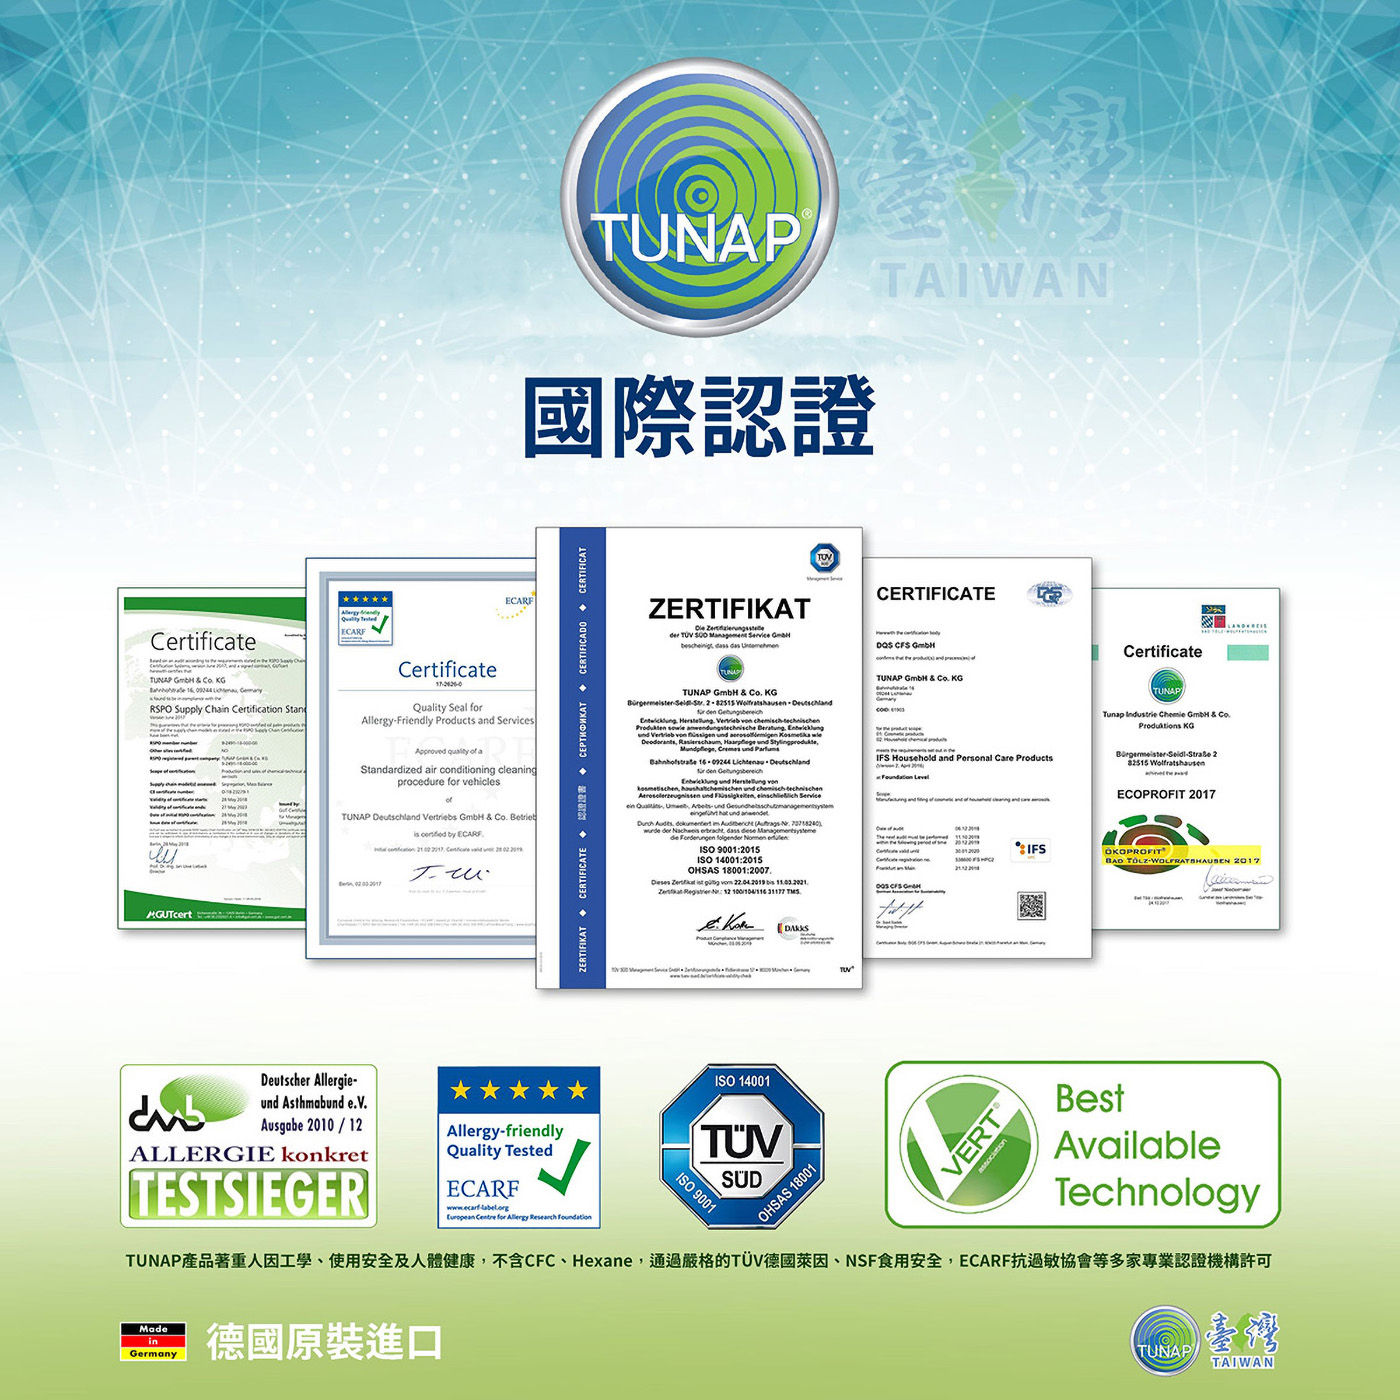 Tunap 124 多功能清潔與強效除膠劑獲得國際認證品牌銷售網遍及歐洲歐系車廠長期指定品牌代工商品供應商